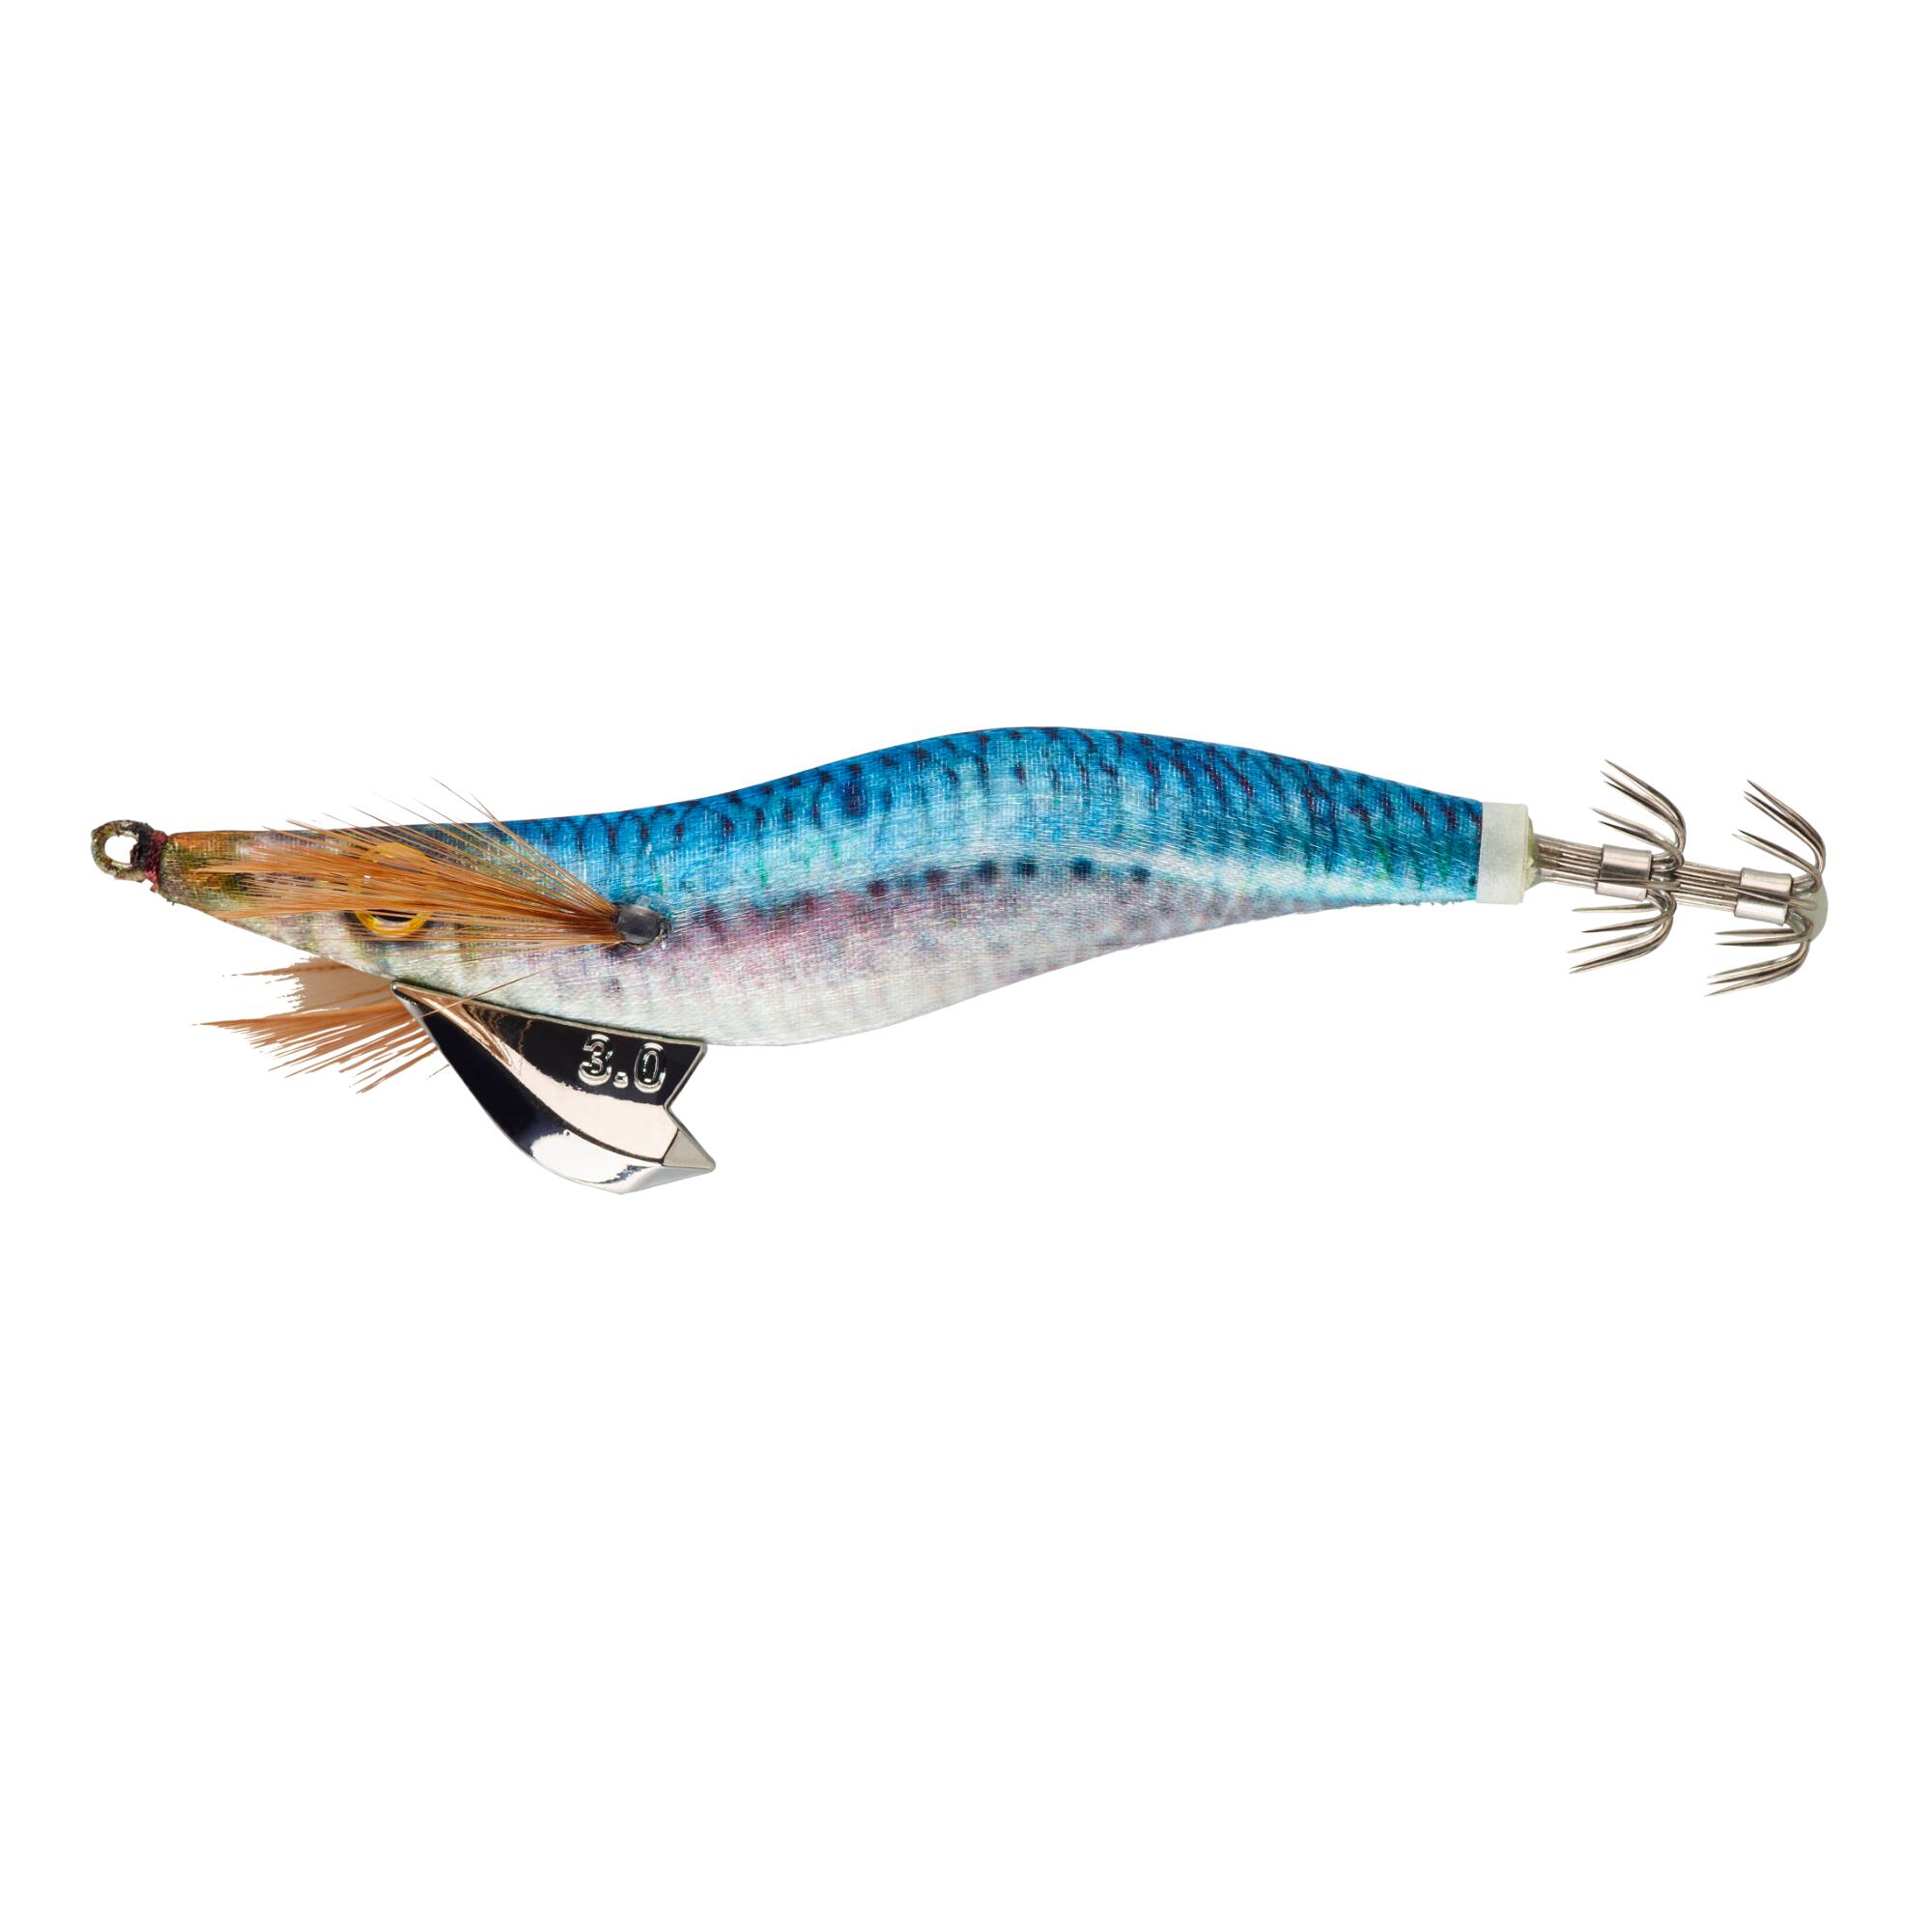 NÄƒlucÄƒ Arici Ebika 3.0/120 bleu sardine Pescuit la Cefalopode